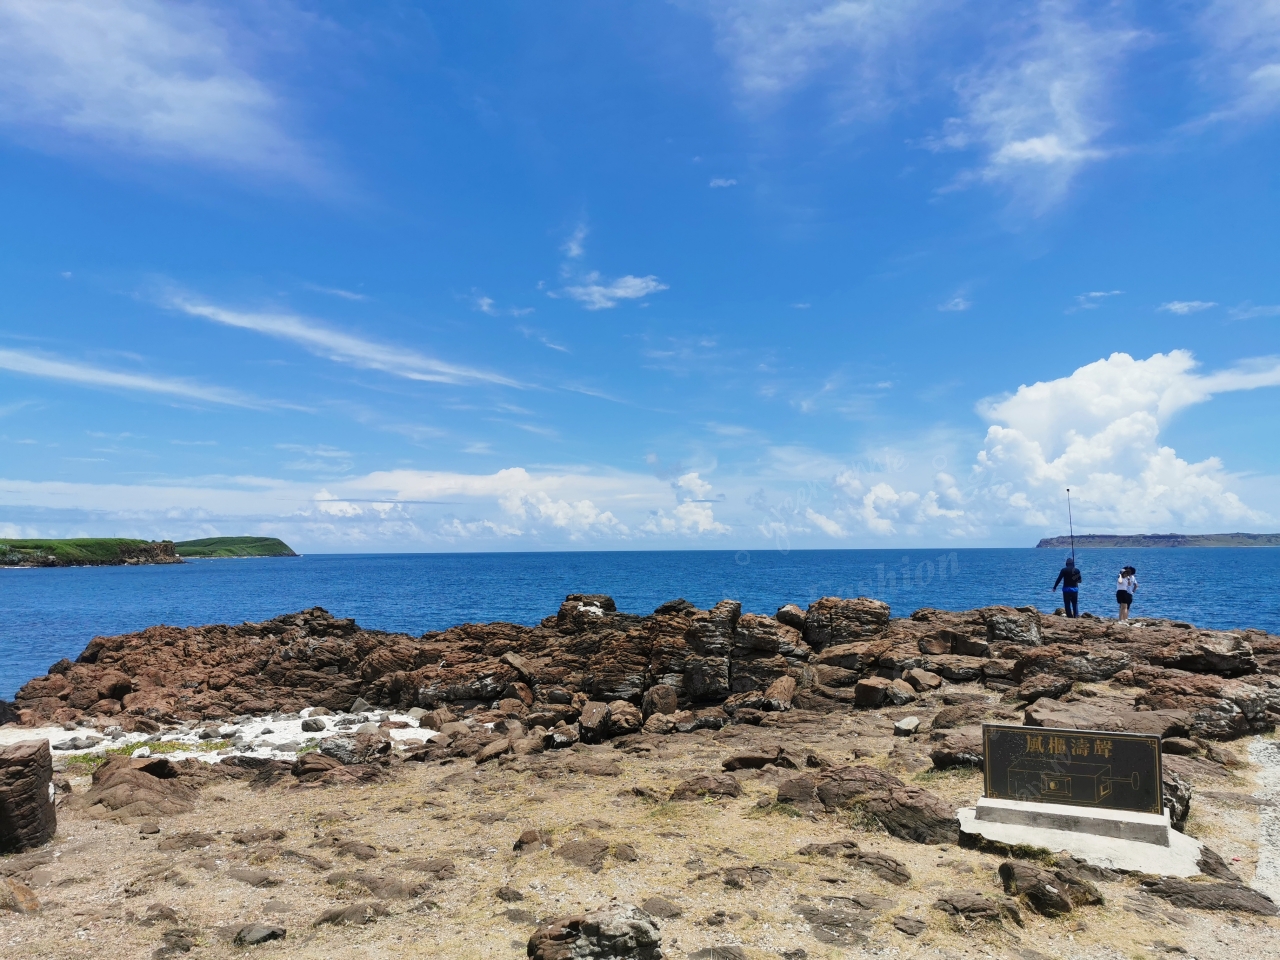 澎湖旅遊：三日客製行程規畫和必去景點介紹